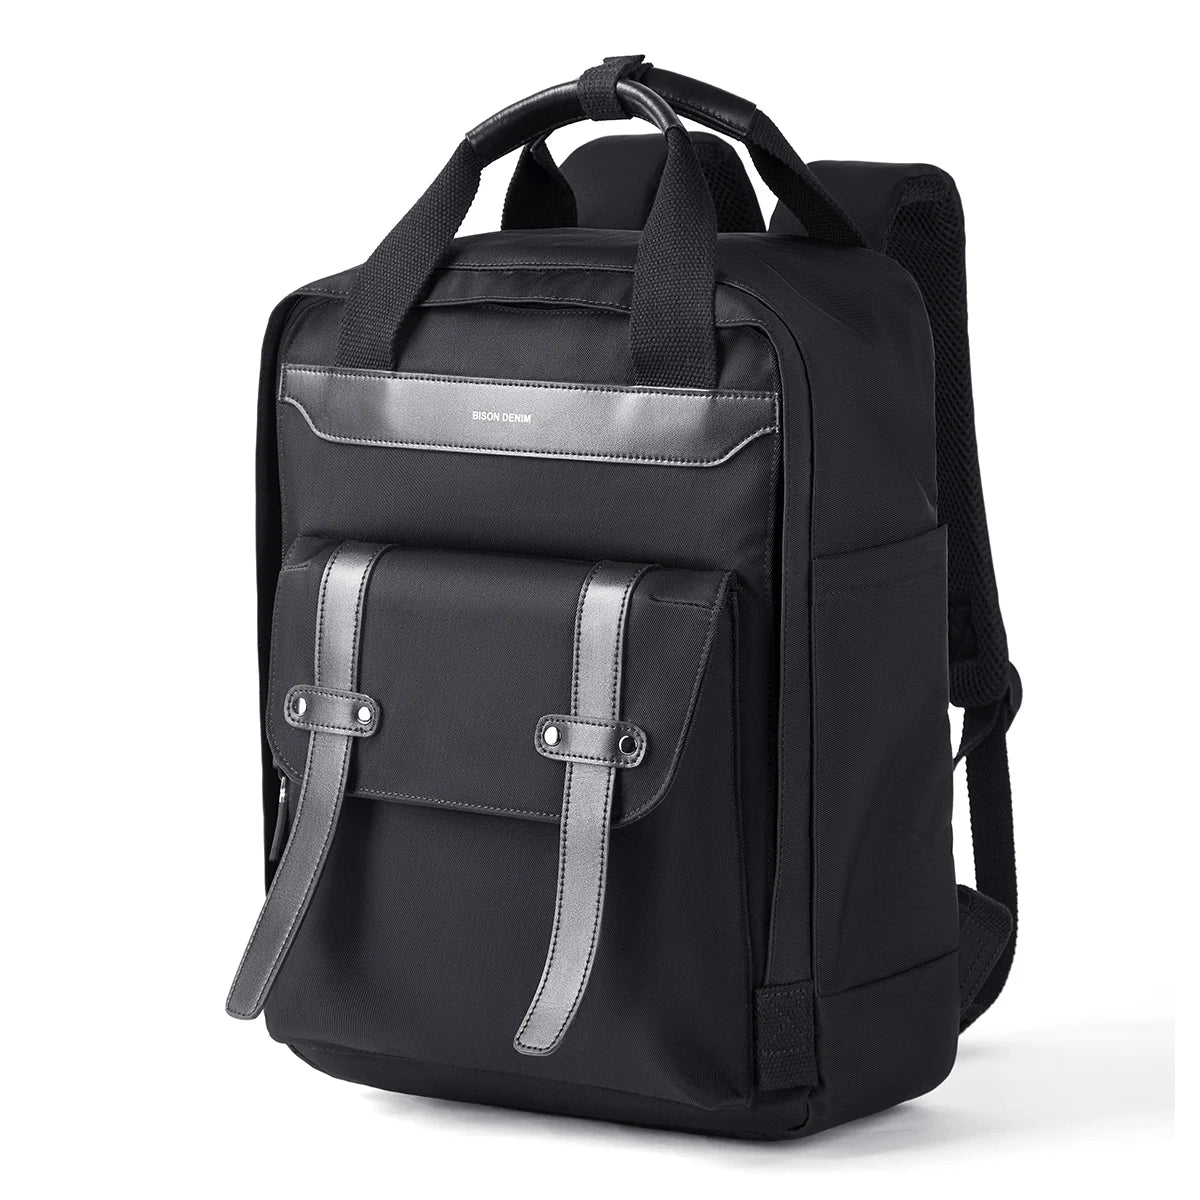 BISON DENIM Multifunction Waterproof Backpack Men Women Luxury Student School Bags Casual Notebook Backpacks 15.6 Inch Laptop Bag N20248 Black